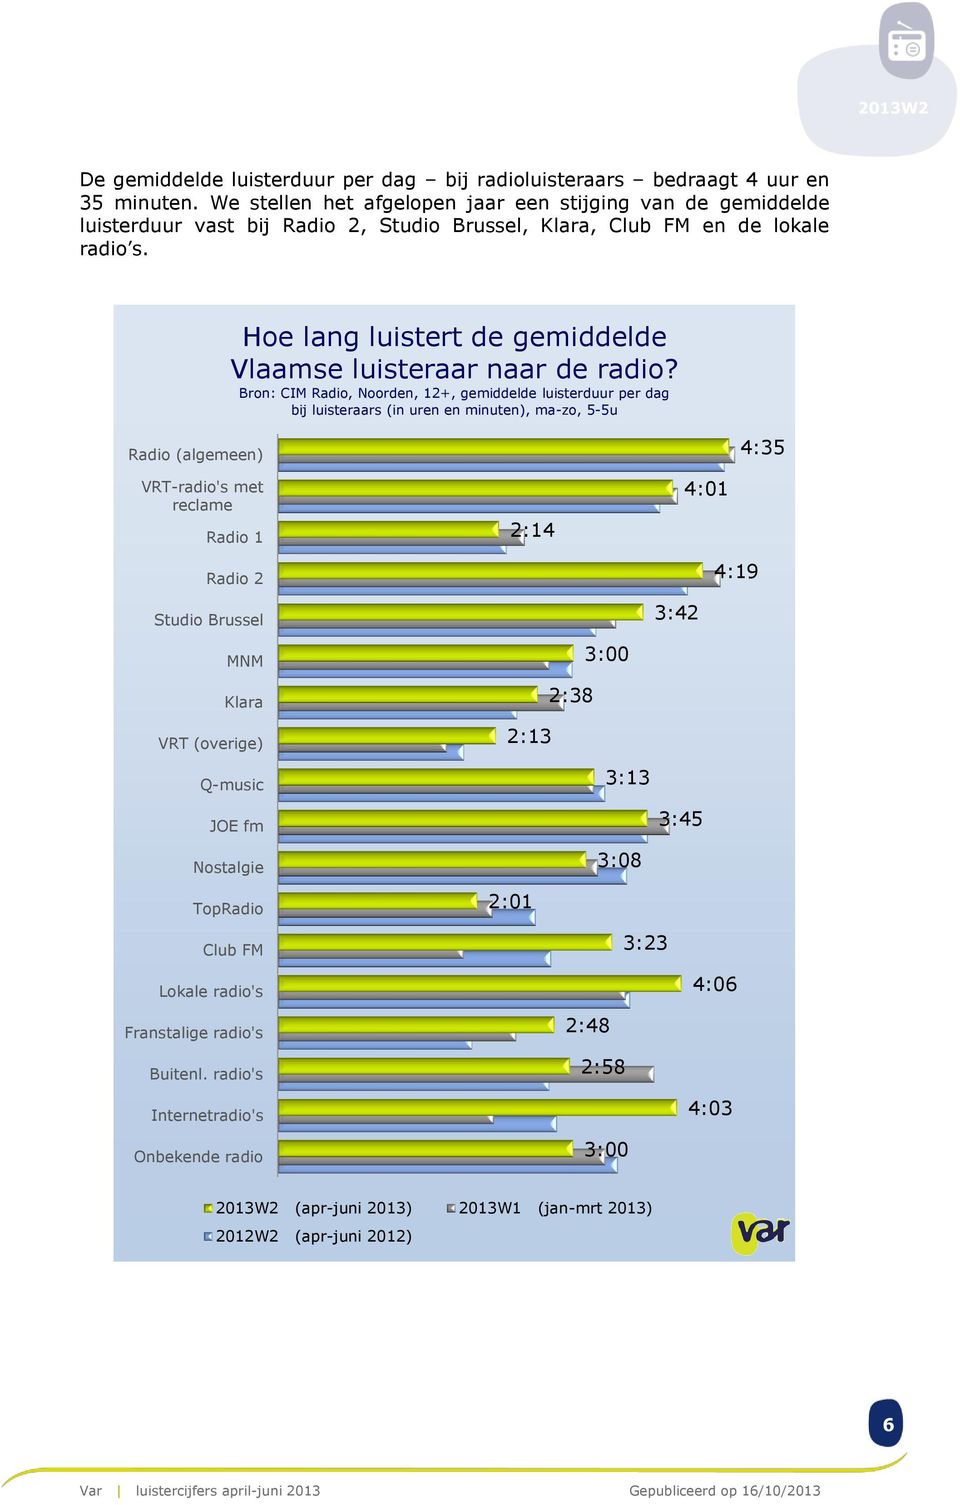 Hoe lang luistert de gemiddelde Vlaamse luisteraar naar de radio?